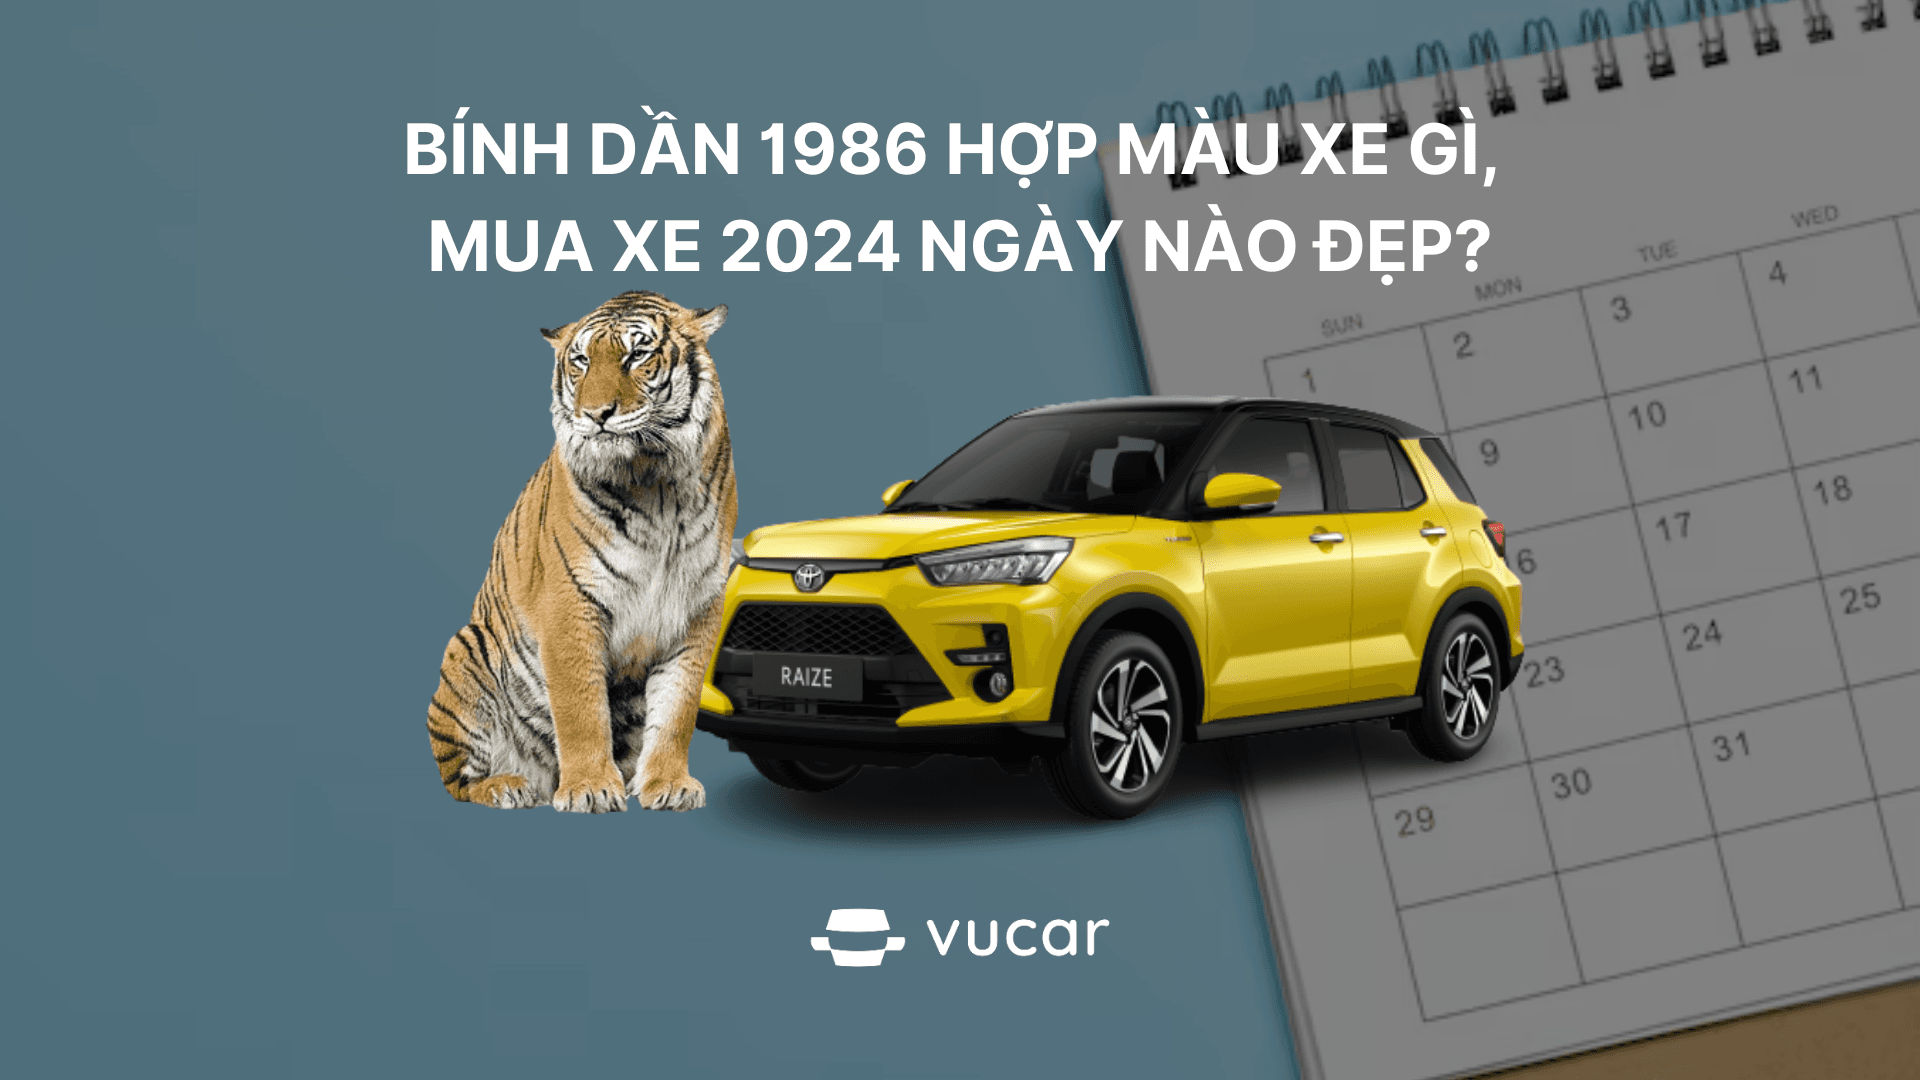 Bính Dần 1986 hợp màu xe gì, mua xe 2024 ngày nào đẹp?